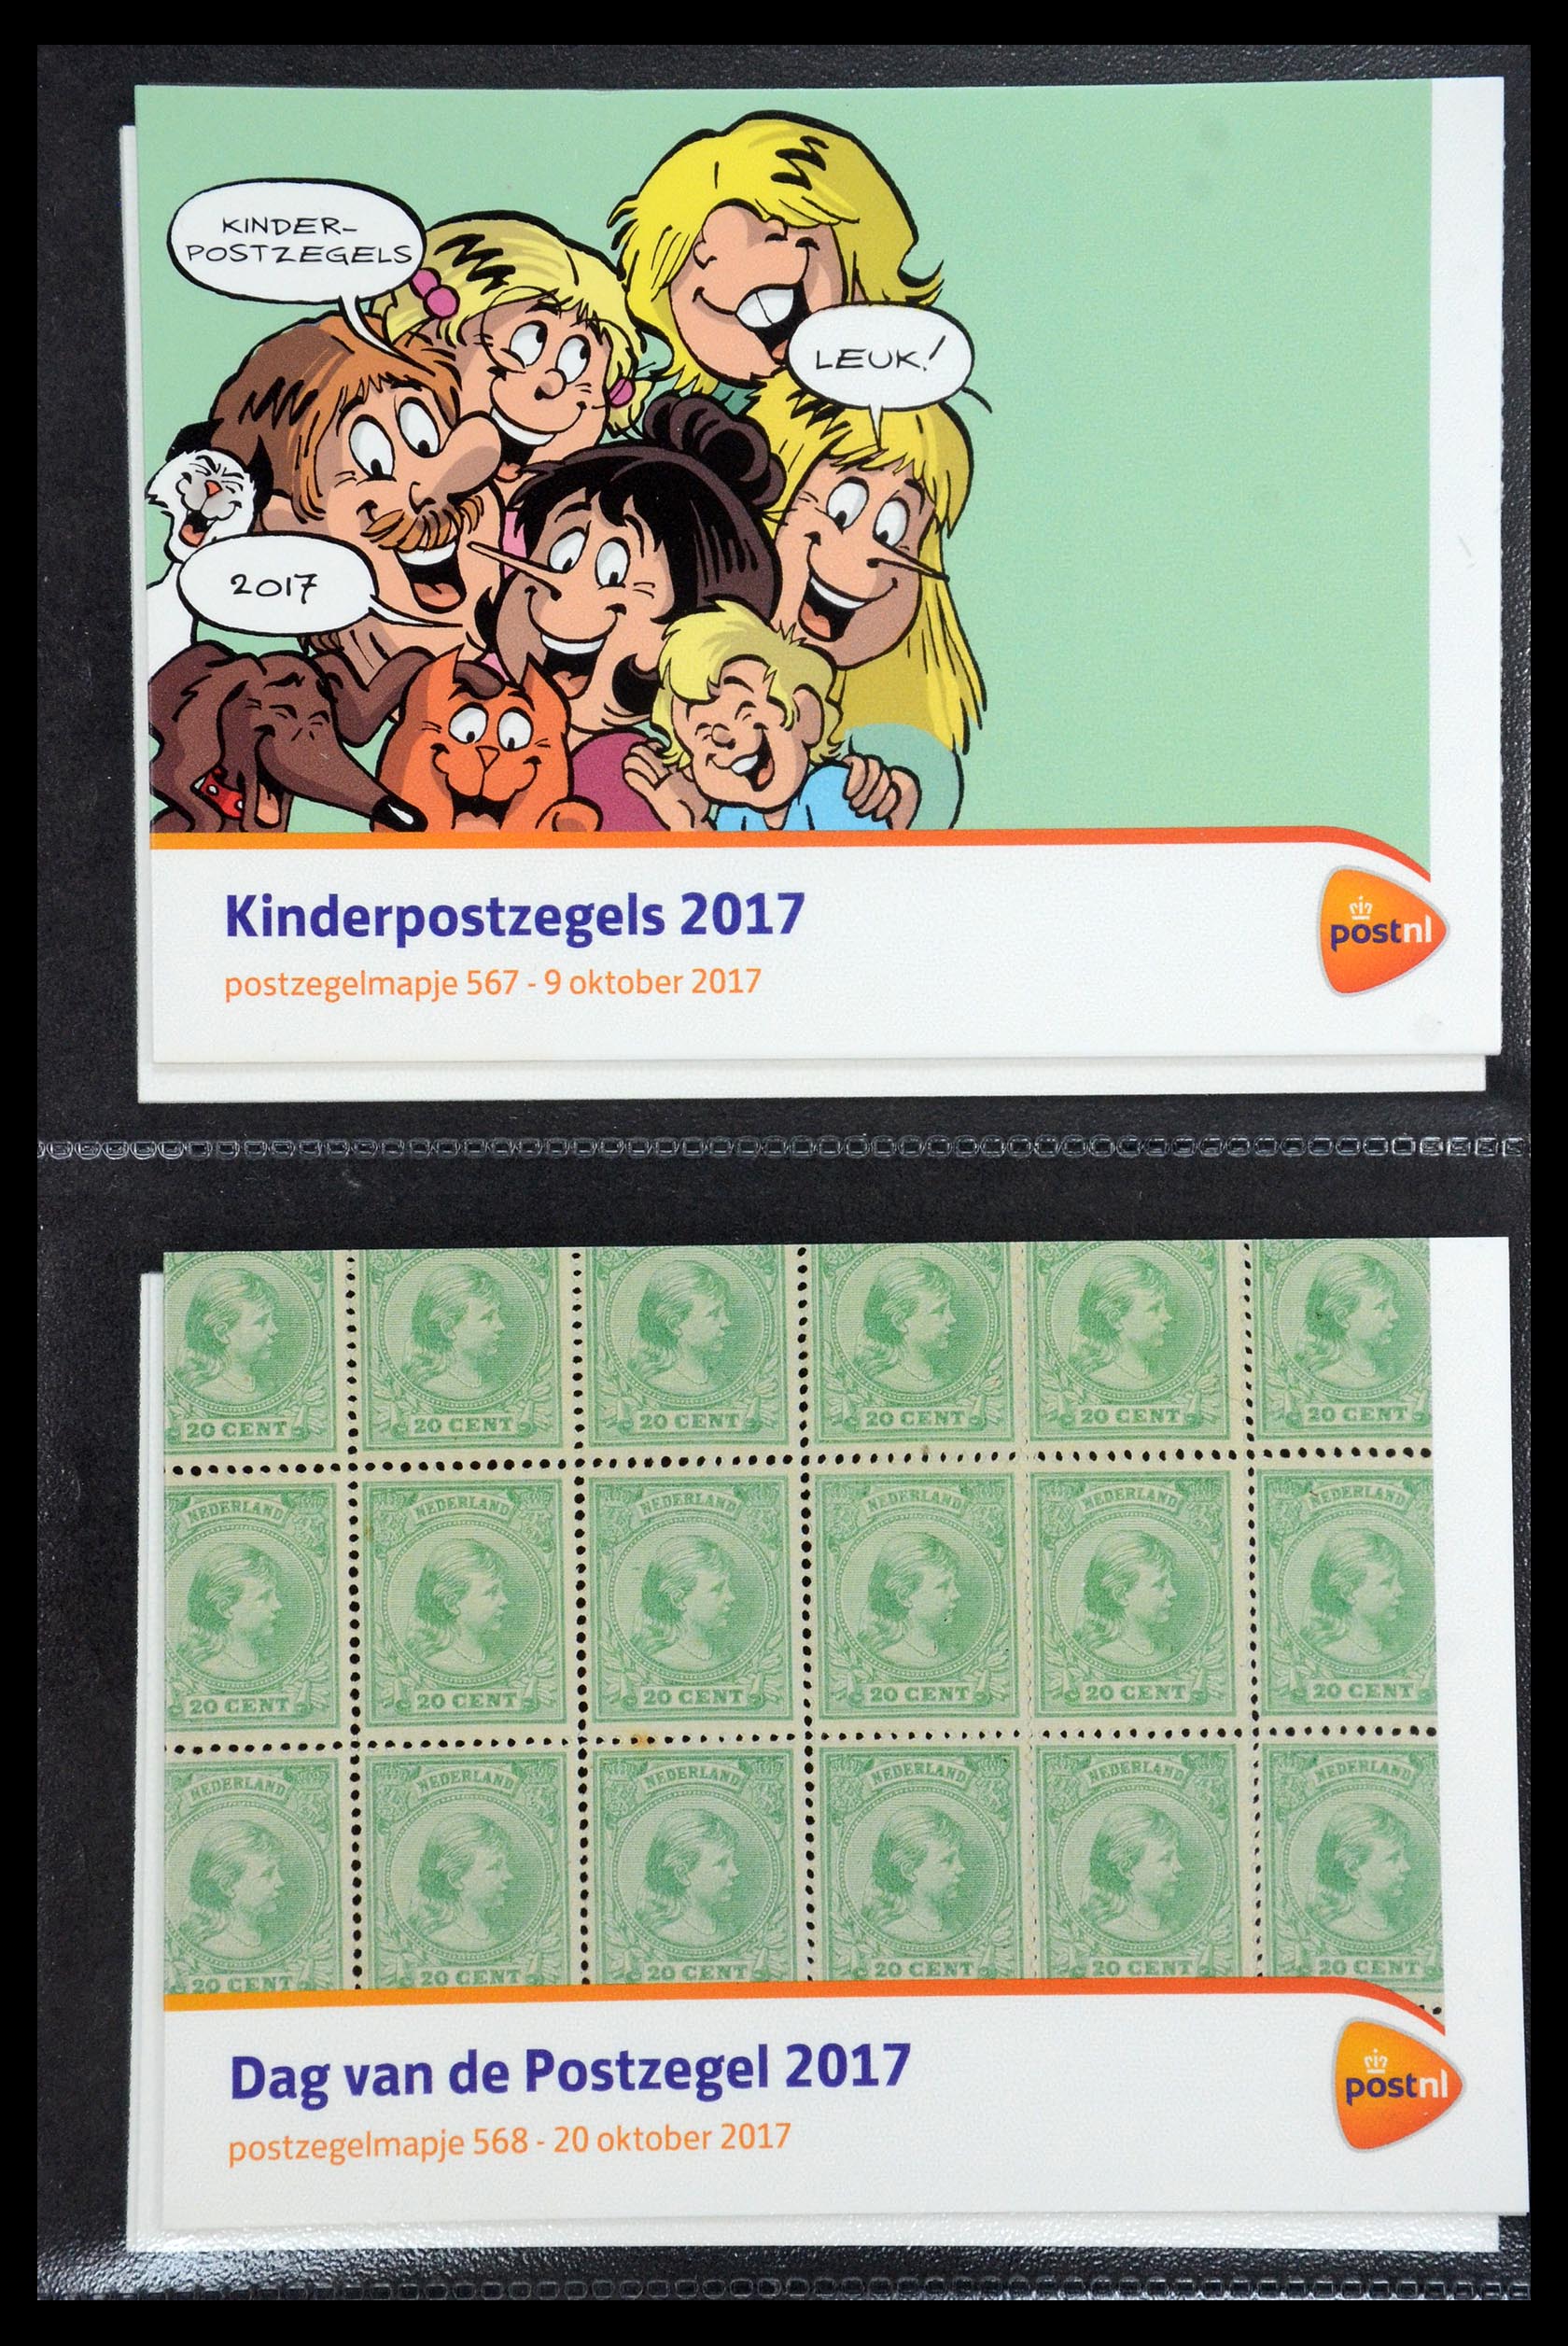 35187 341 - Stamp Collection 35187 Netherlands PTT presentation packs 1982-2019!